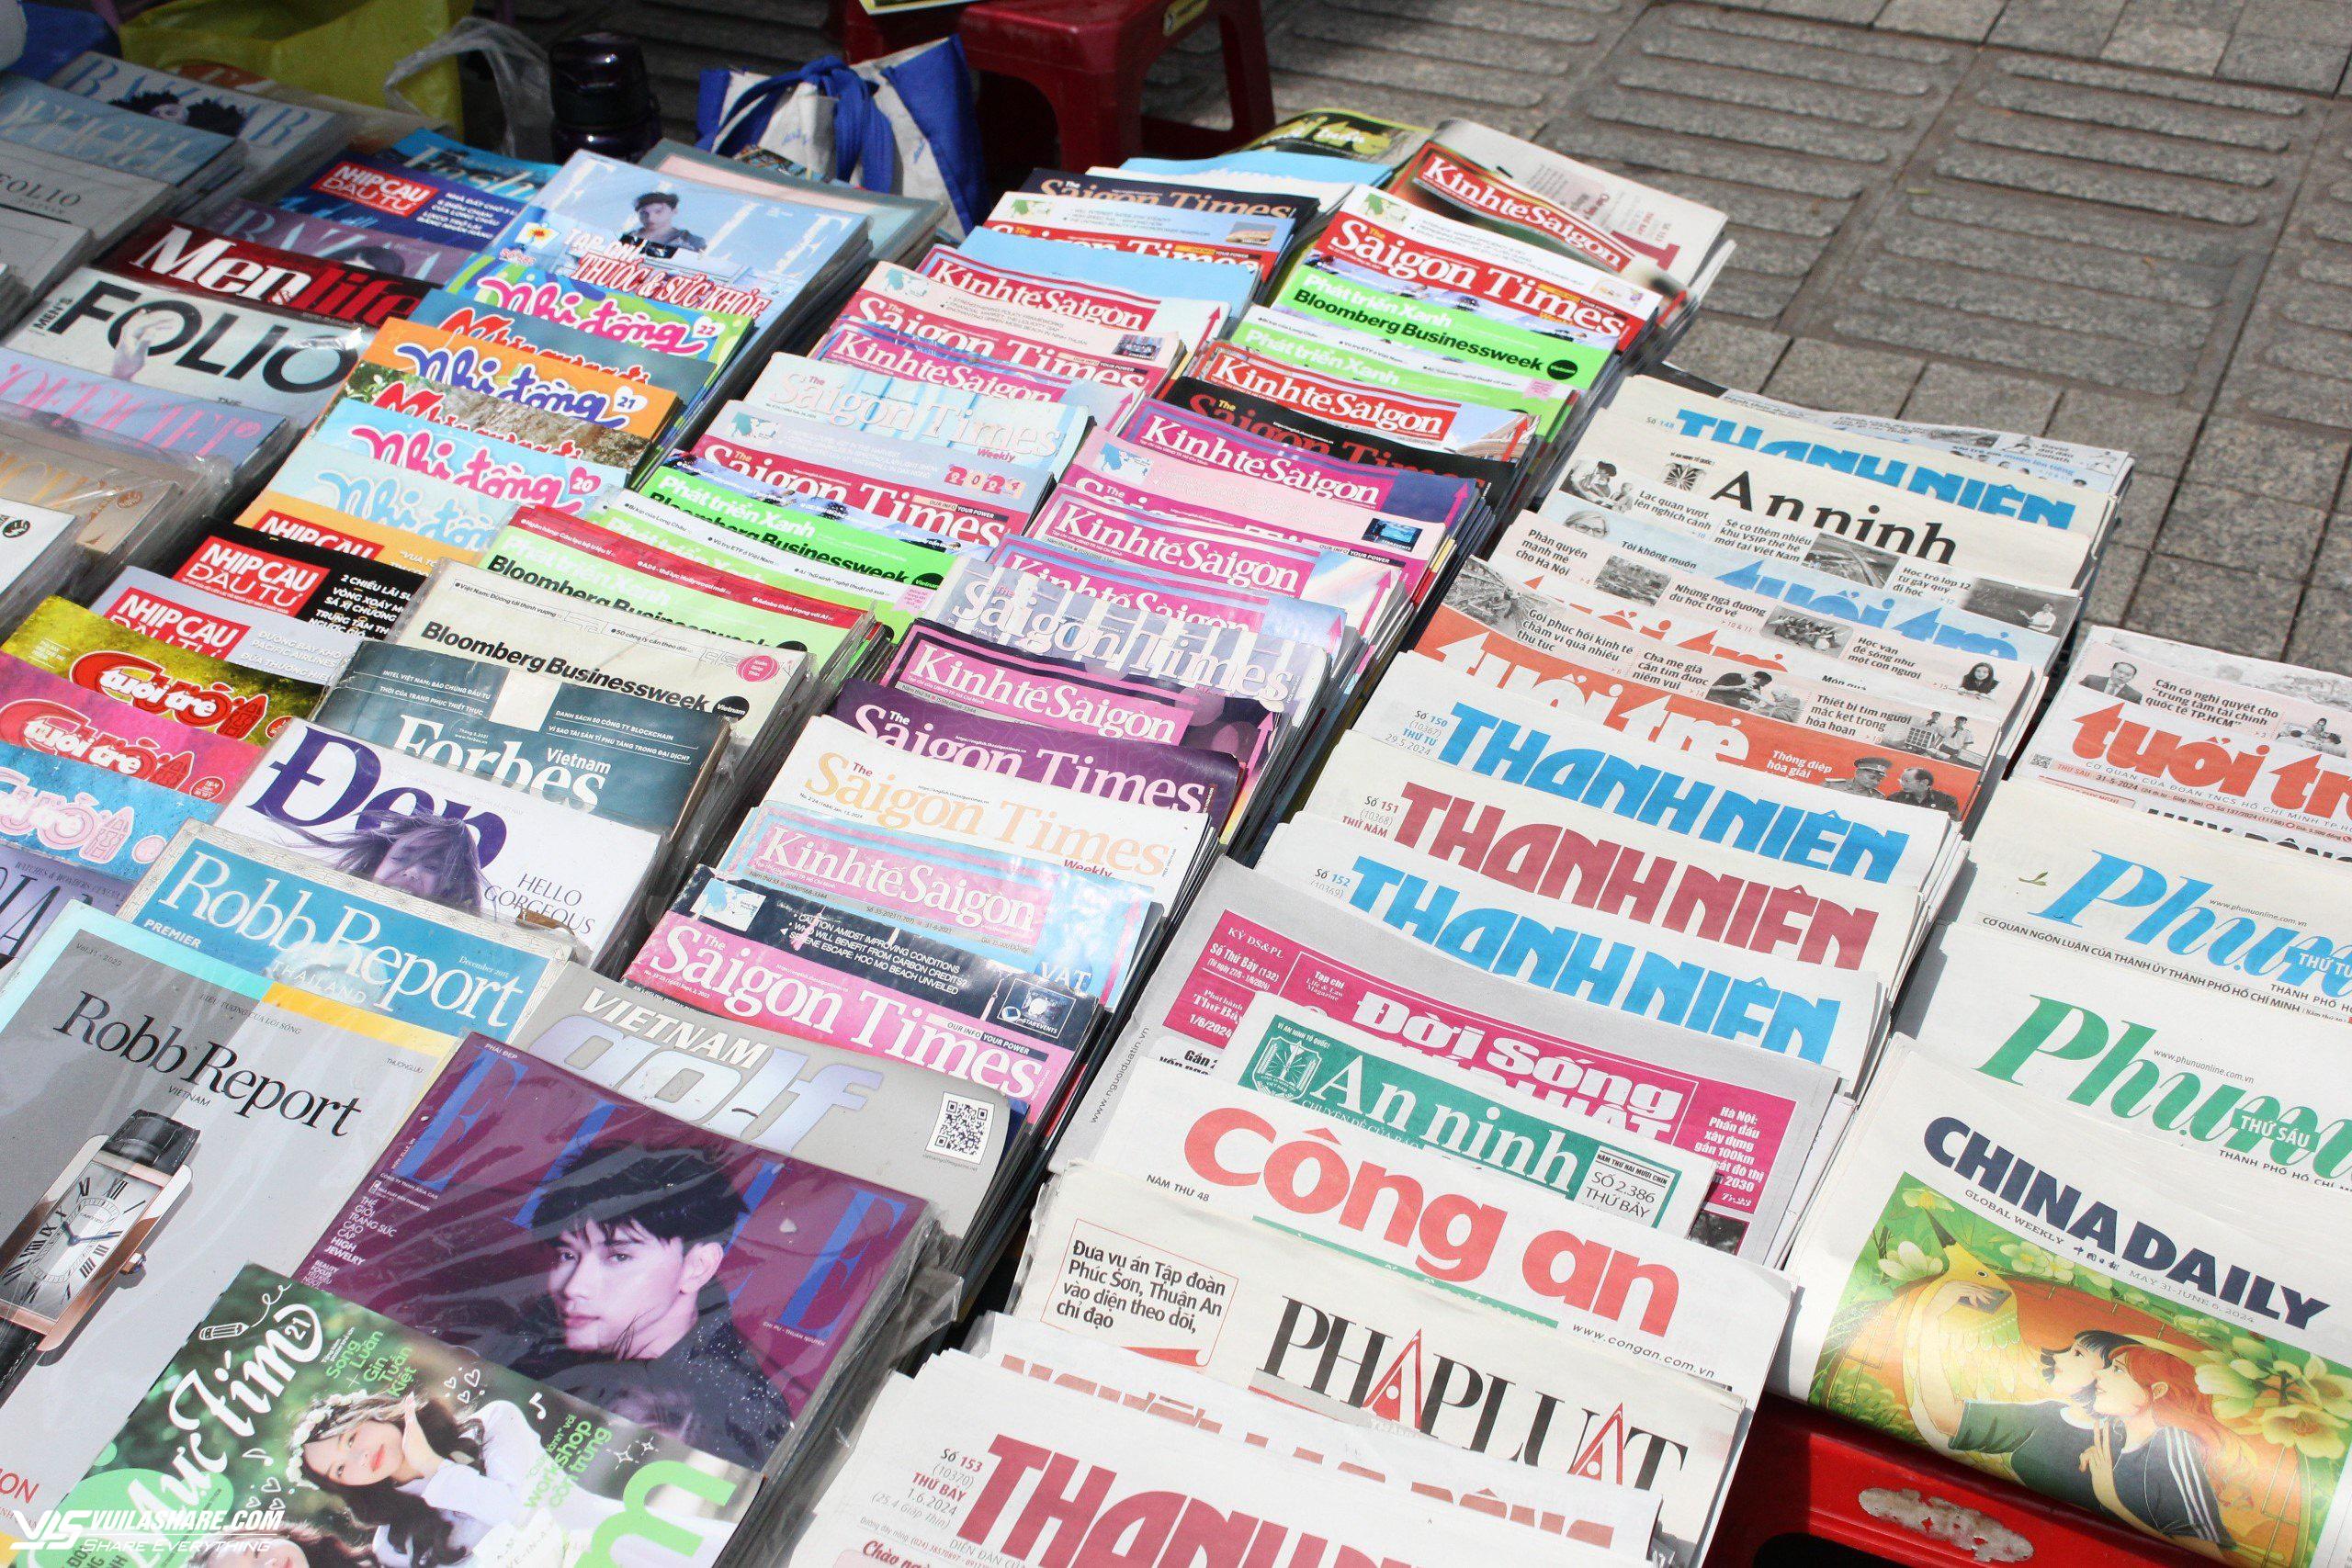 Sạp báo của ông Hùng bán đủ các loại báo giấy, tạp chí, tuần san